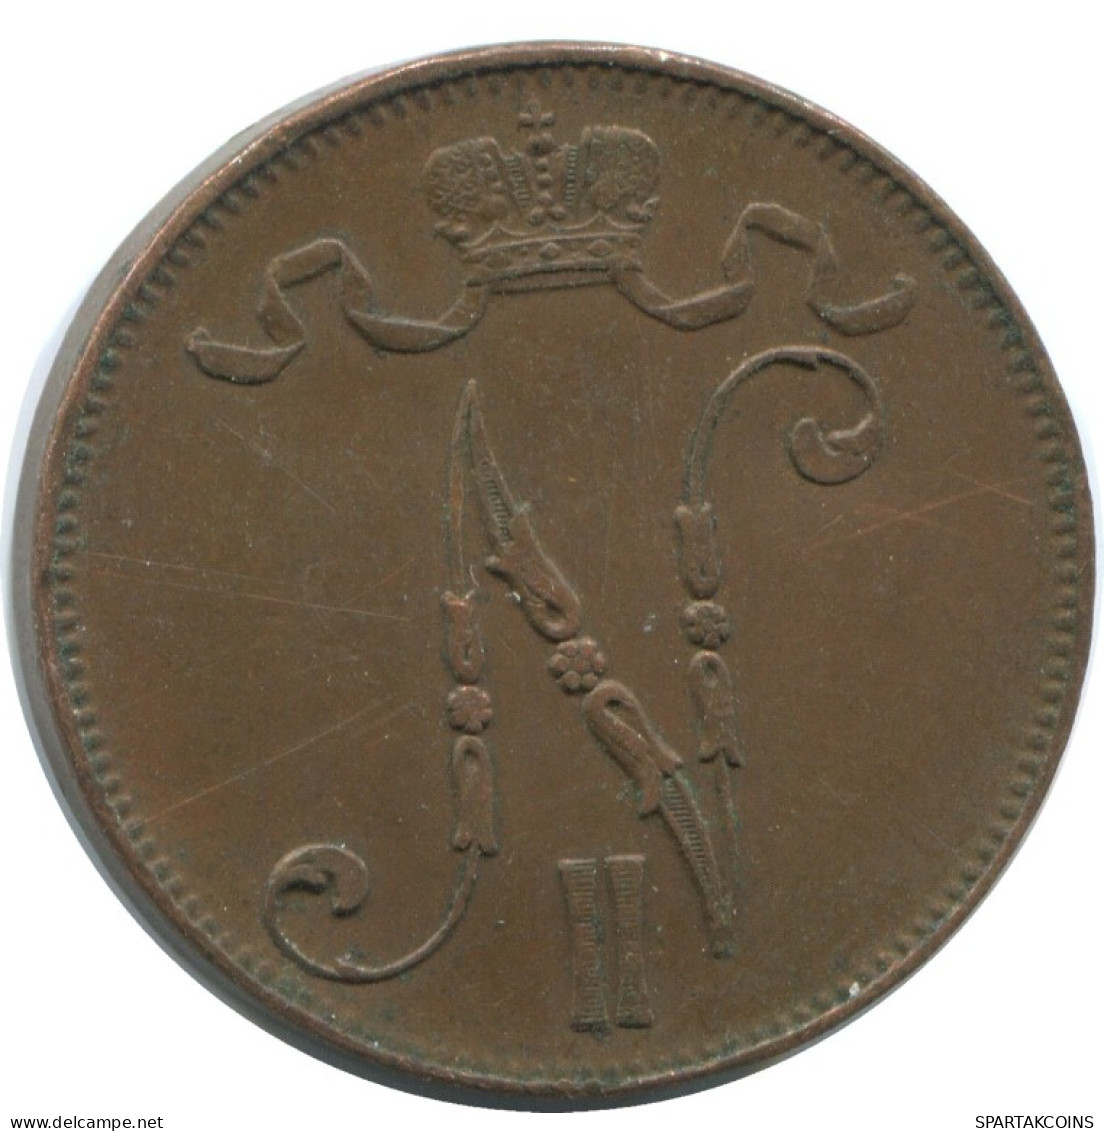 5 PENNIA 1916 FINLAND Coin RUSSIA EMPIRE #AB165.5.U.A - Finlandia